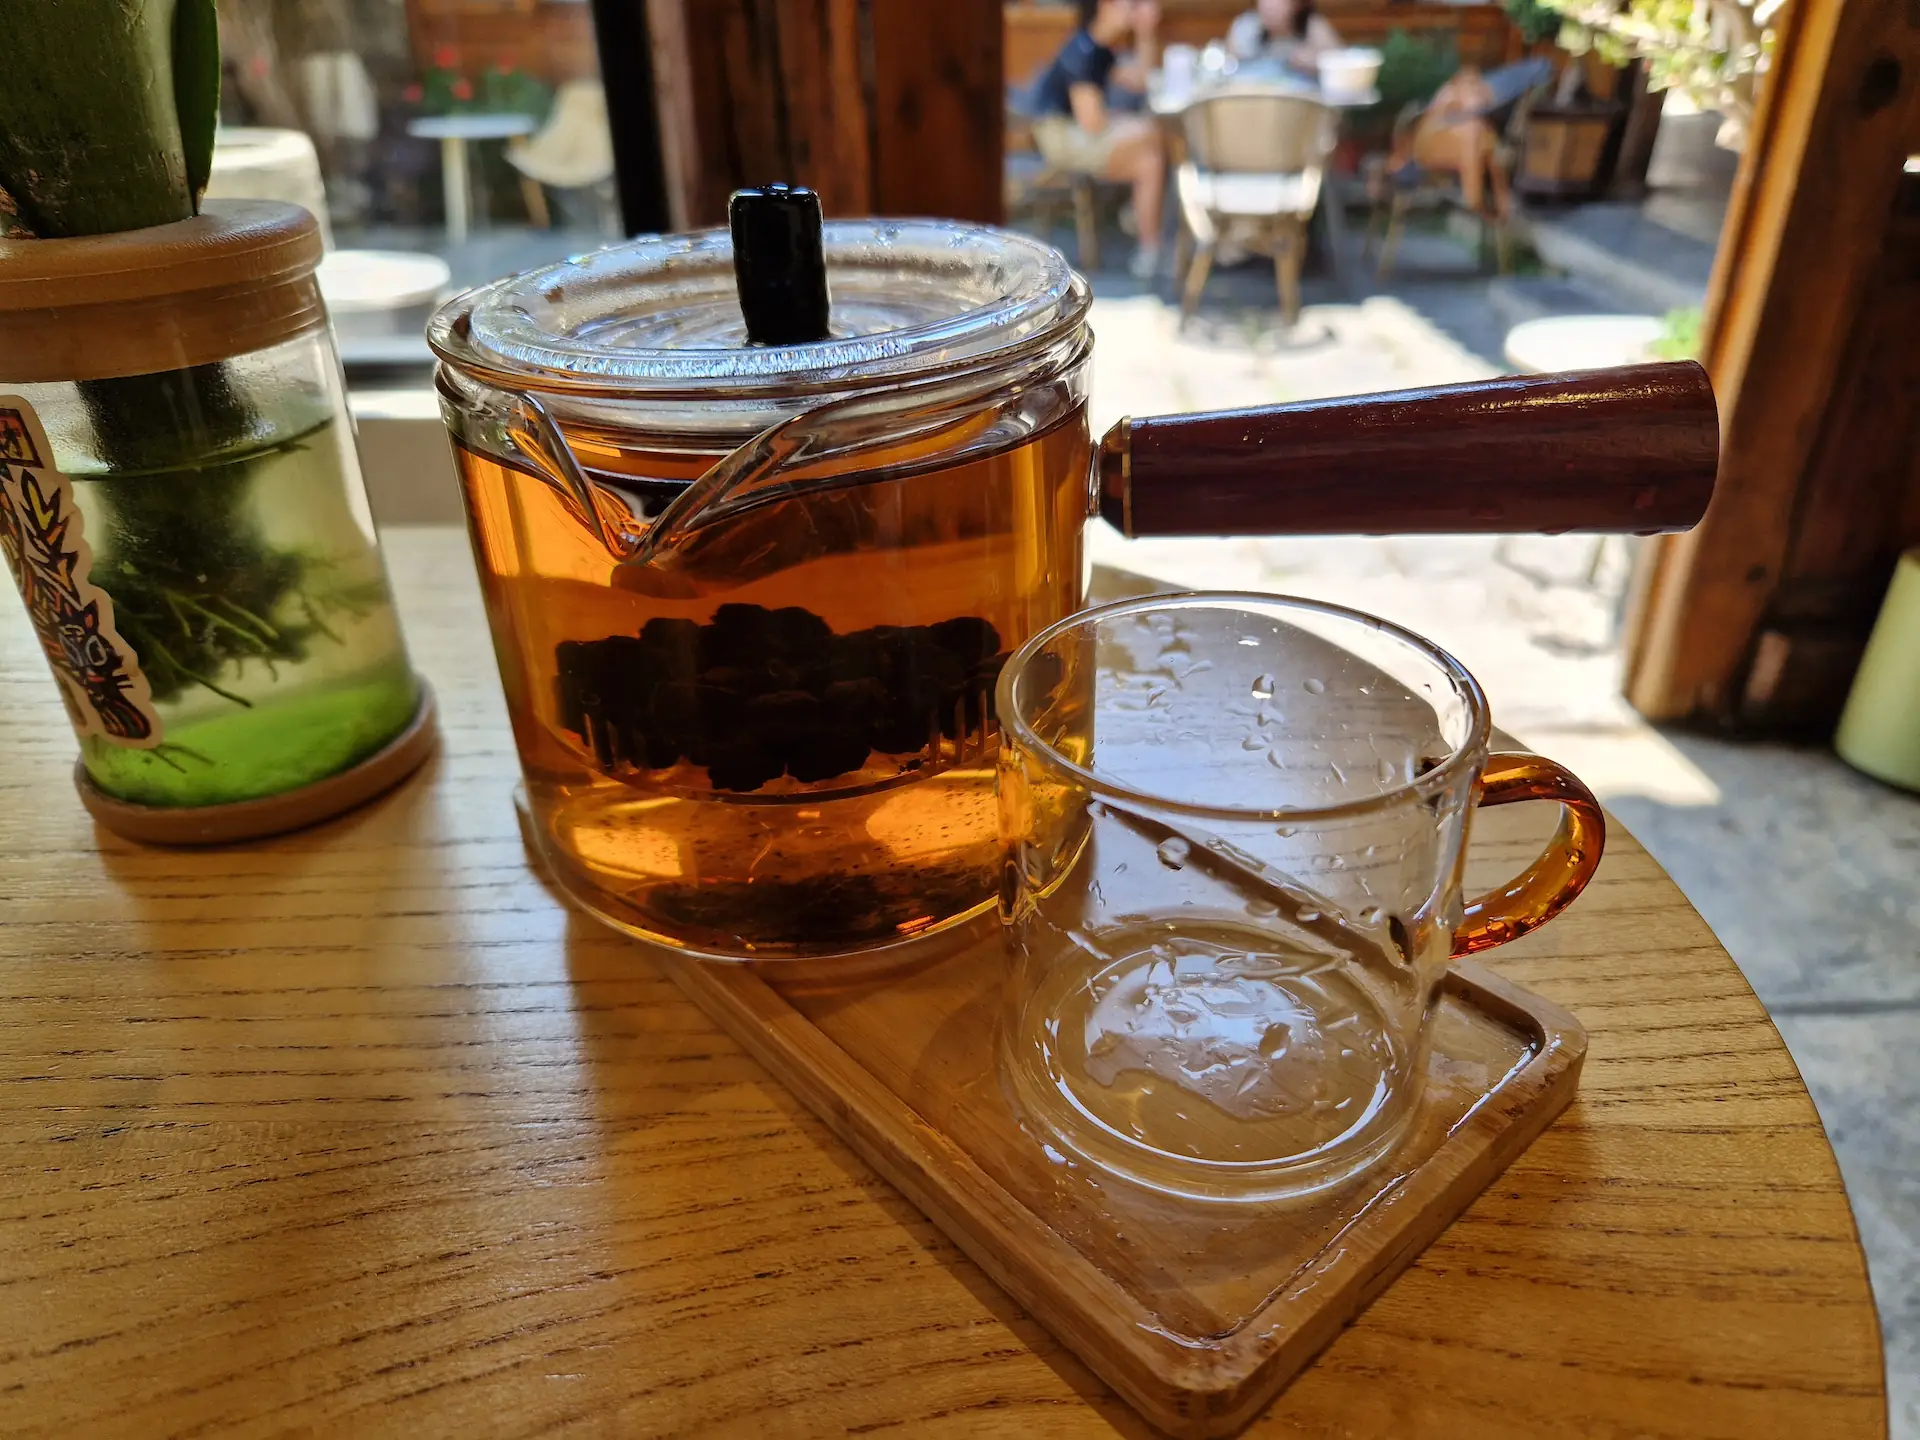 Le thé est servi dans une théière en verre, avec une poignée en bois sur le côté.